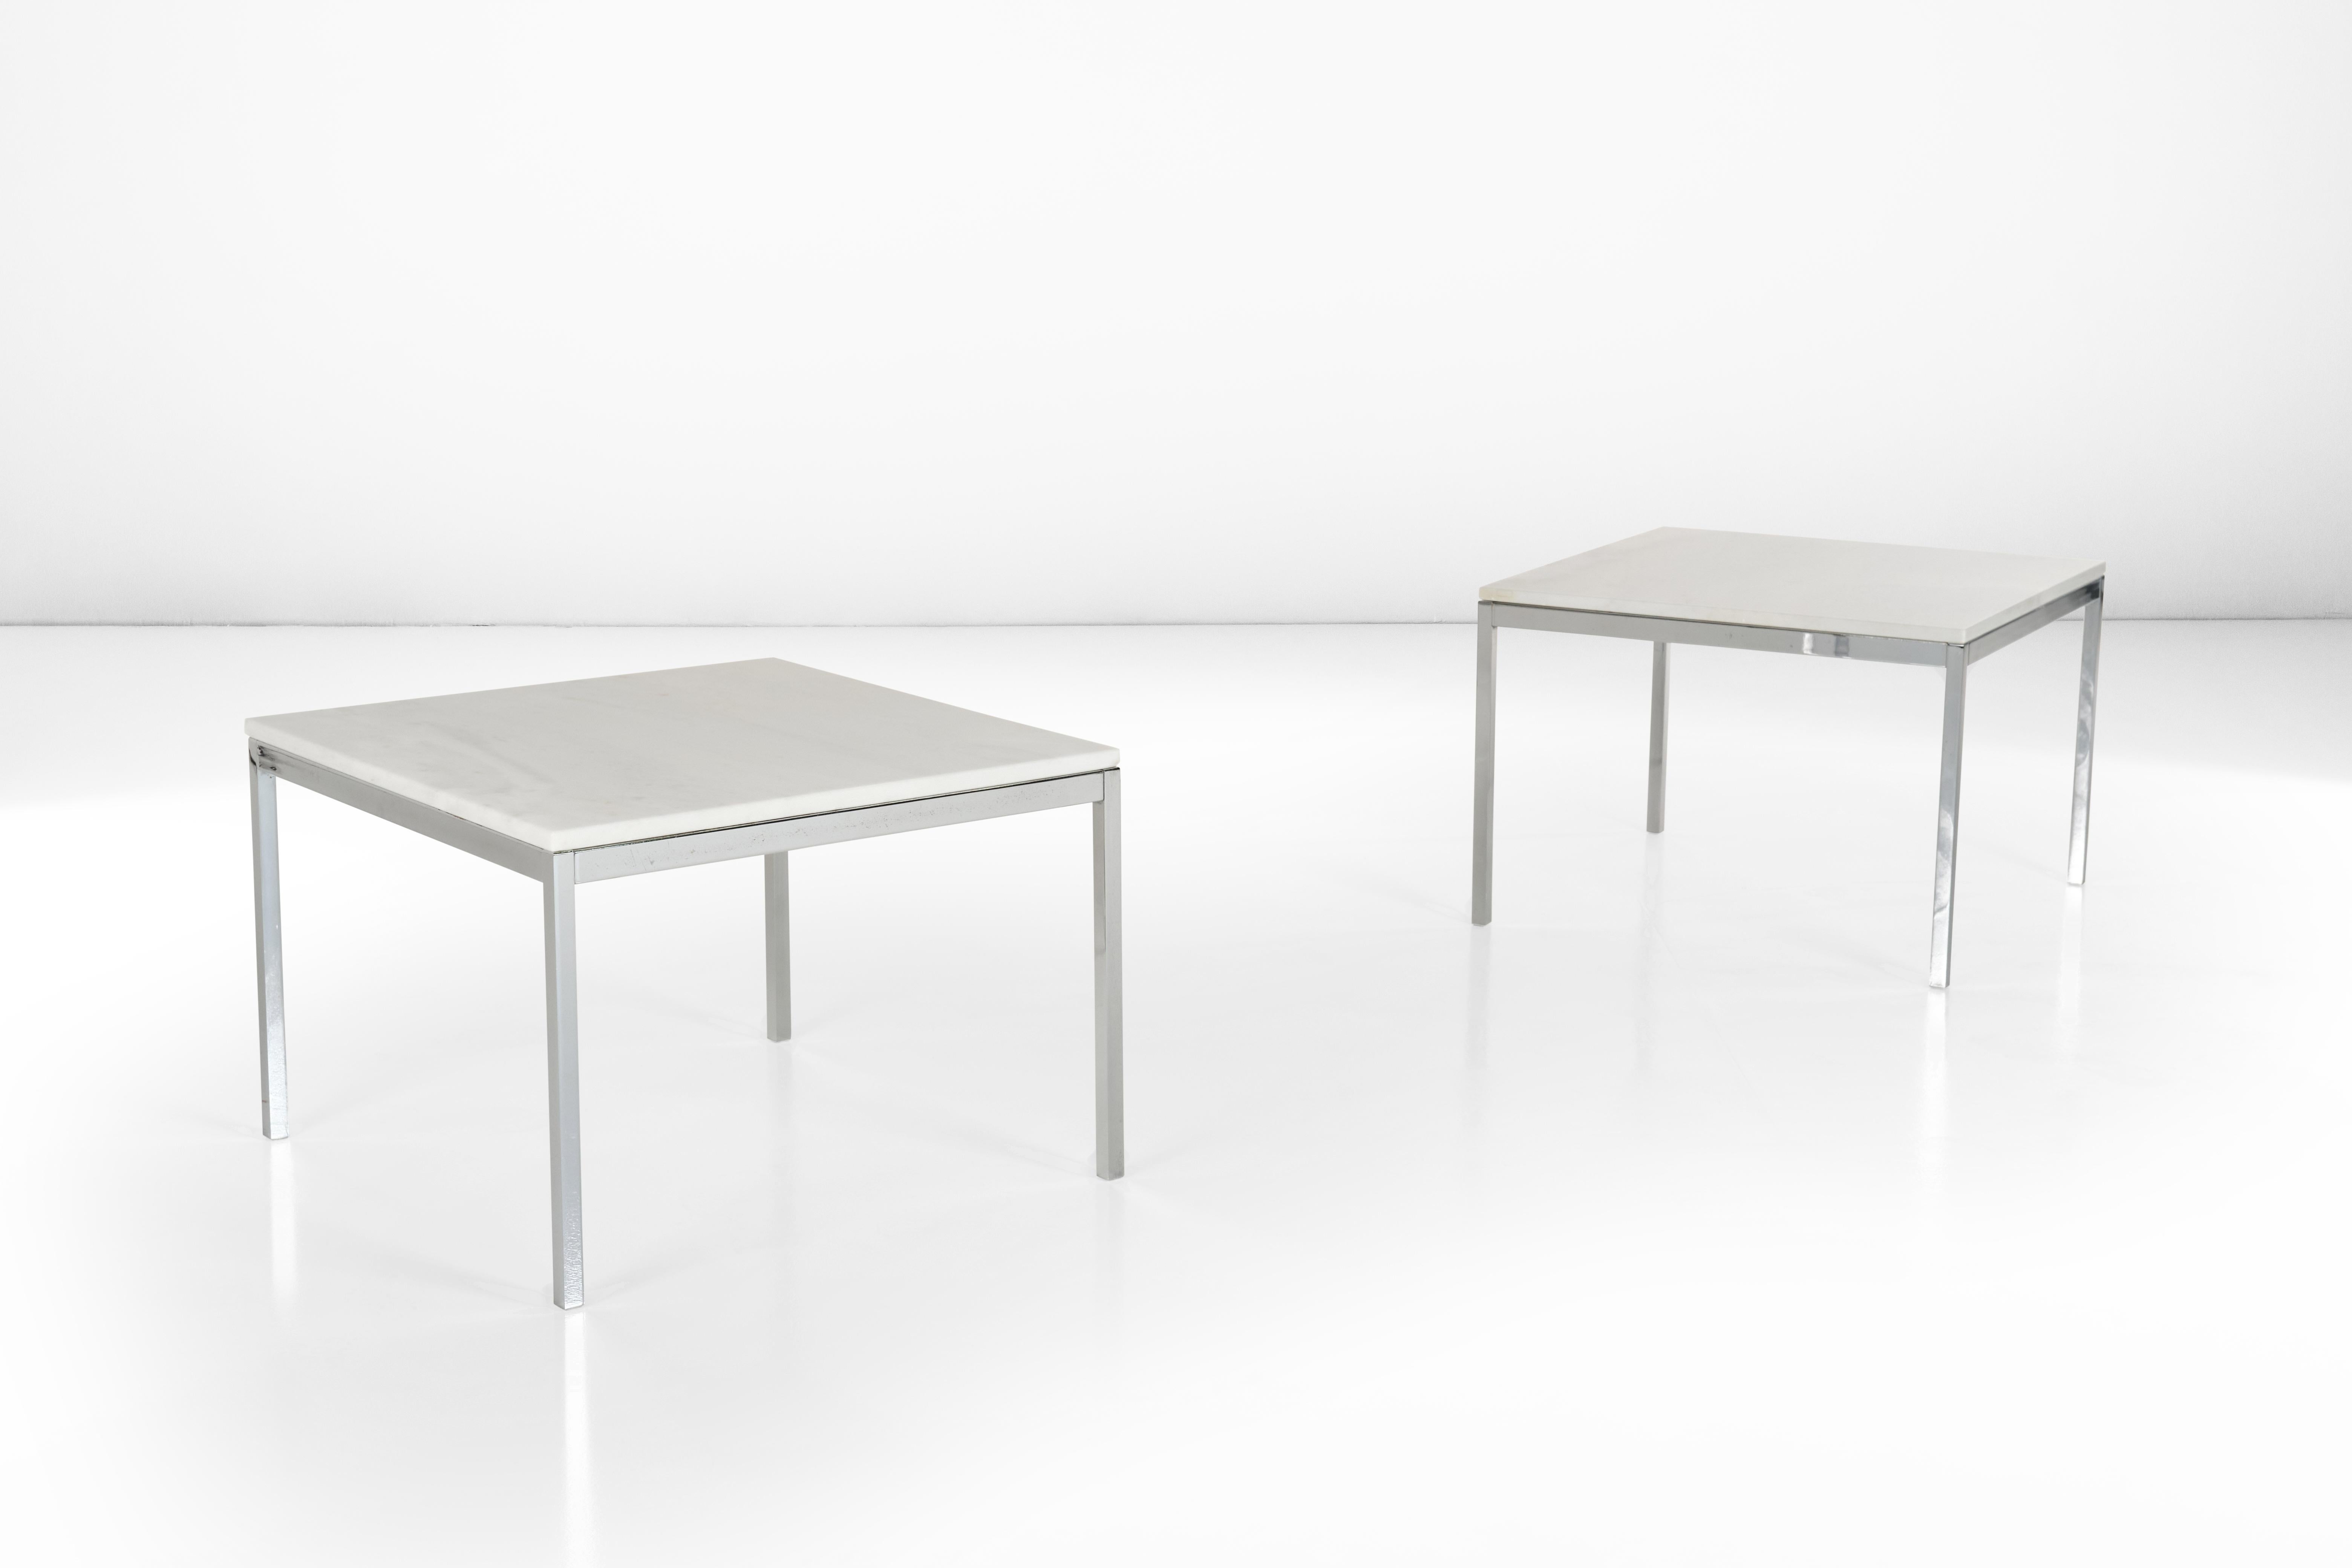 Cet ensemble de deux tables basses avec une structure en acier et un plateau en marbre blanc est un témoignage de l'influence de Florence Knoll sur le design et de la diffusion qu'elle a eue en Italie, le lieu d'origine de cet ensemble. Comme toutes